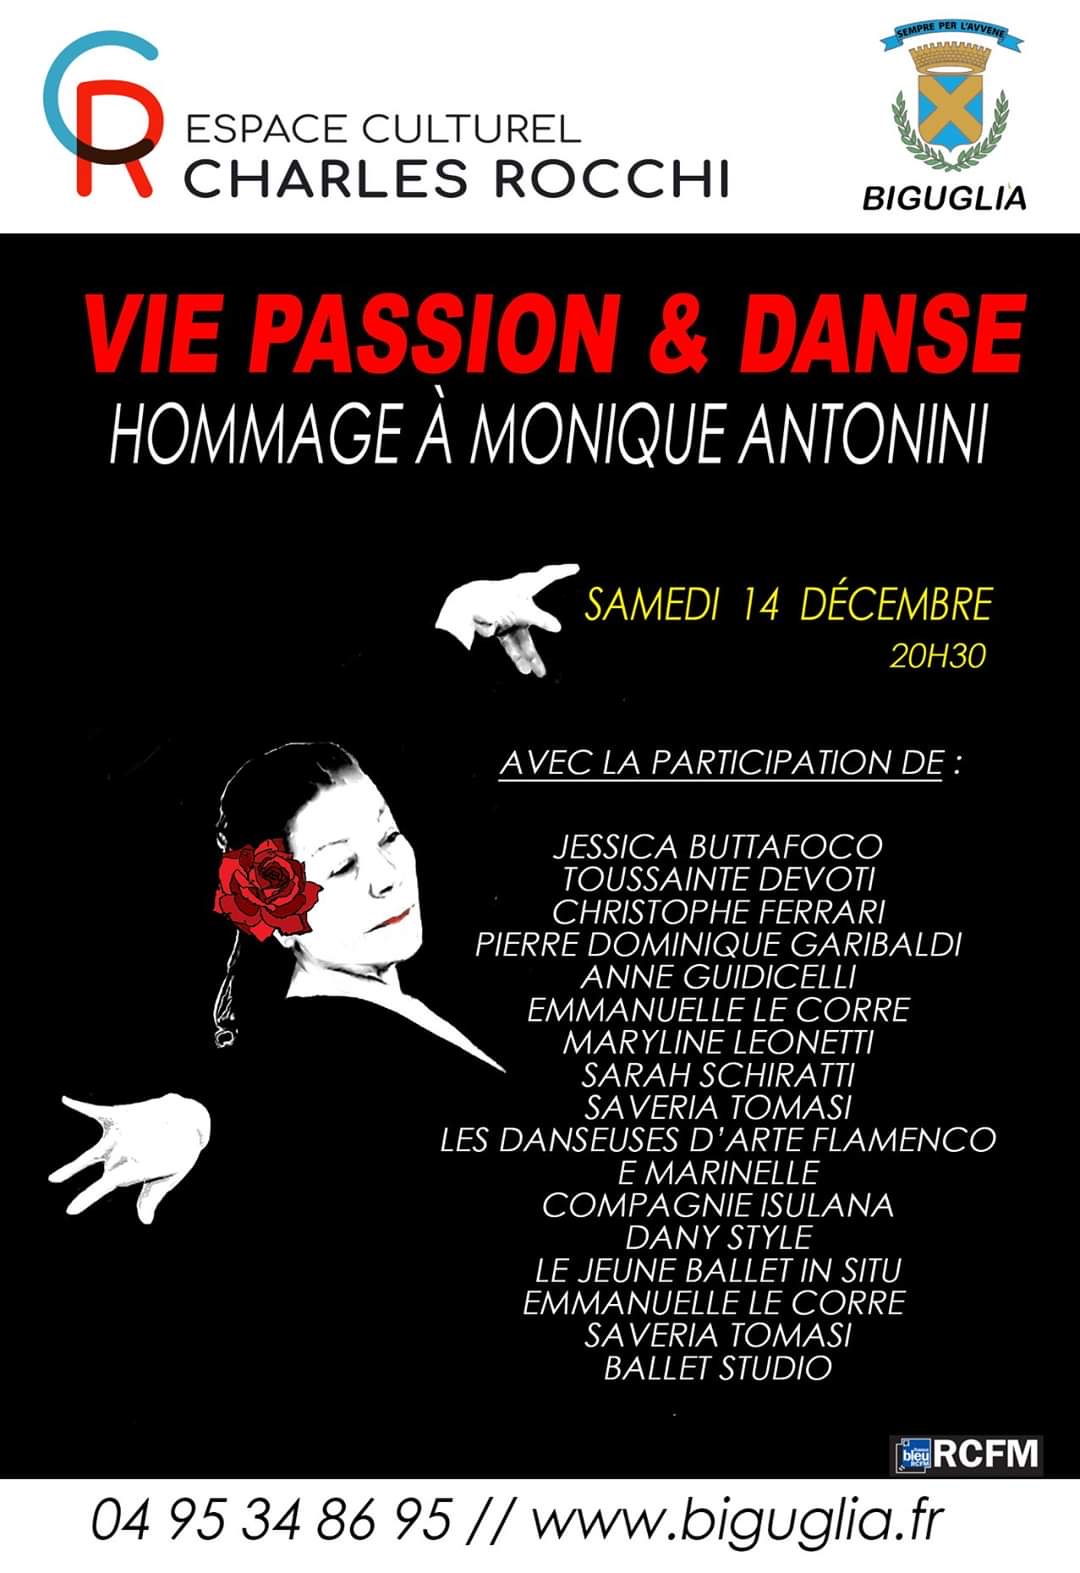 Biguglia : le bel hommage des clubs de danse à Monique Antonini